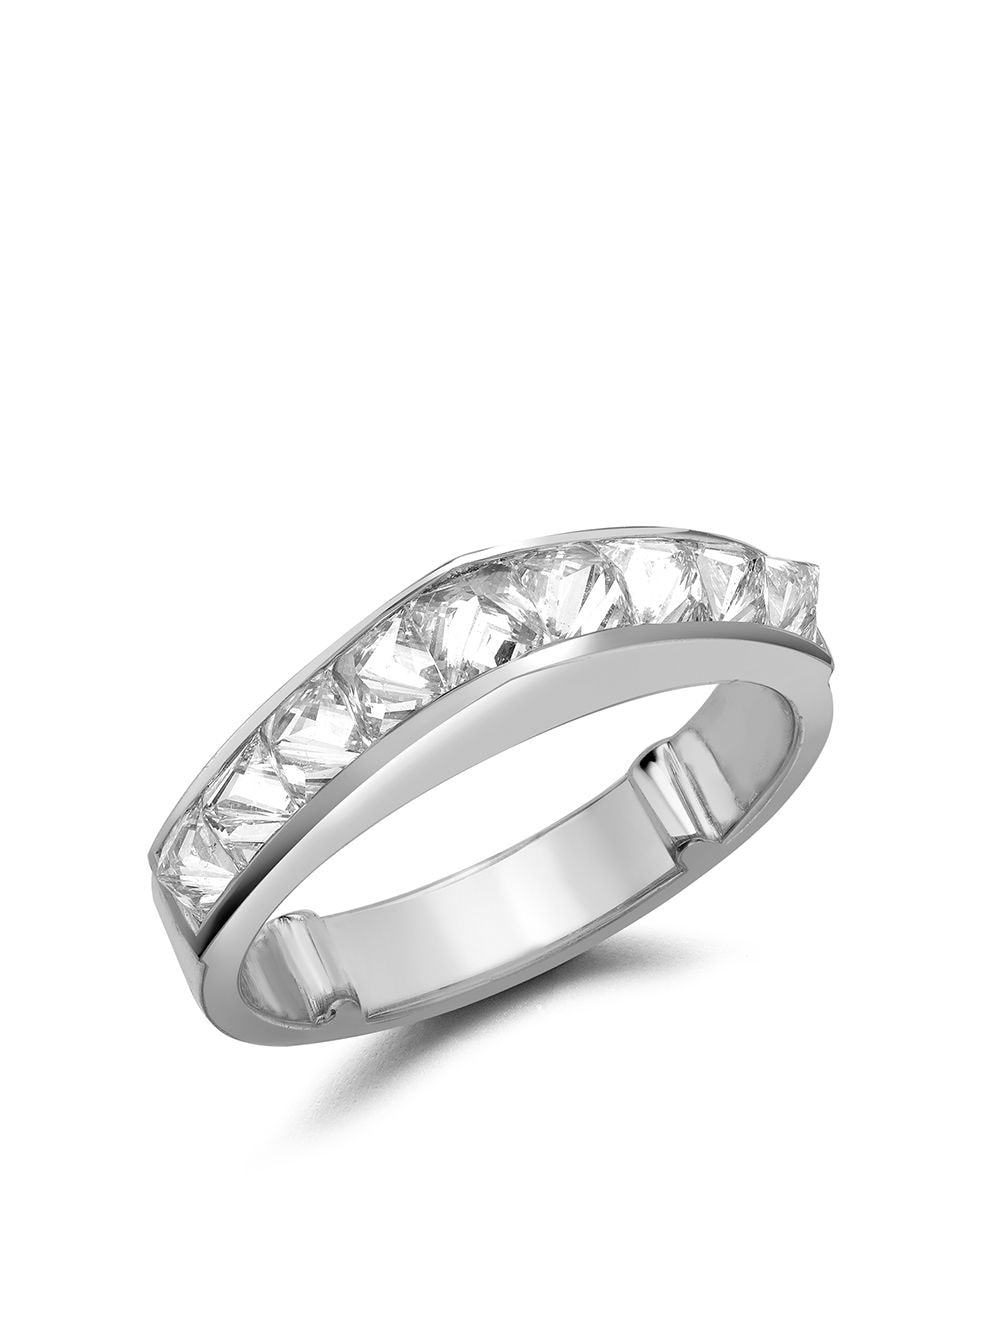 Pragnell 18kt white gold RockChic peaked diamond ring - Silver von Pragnell